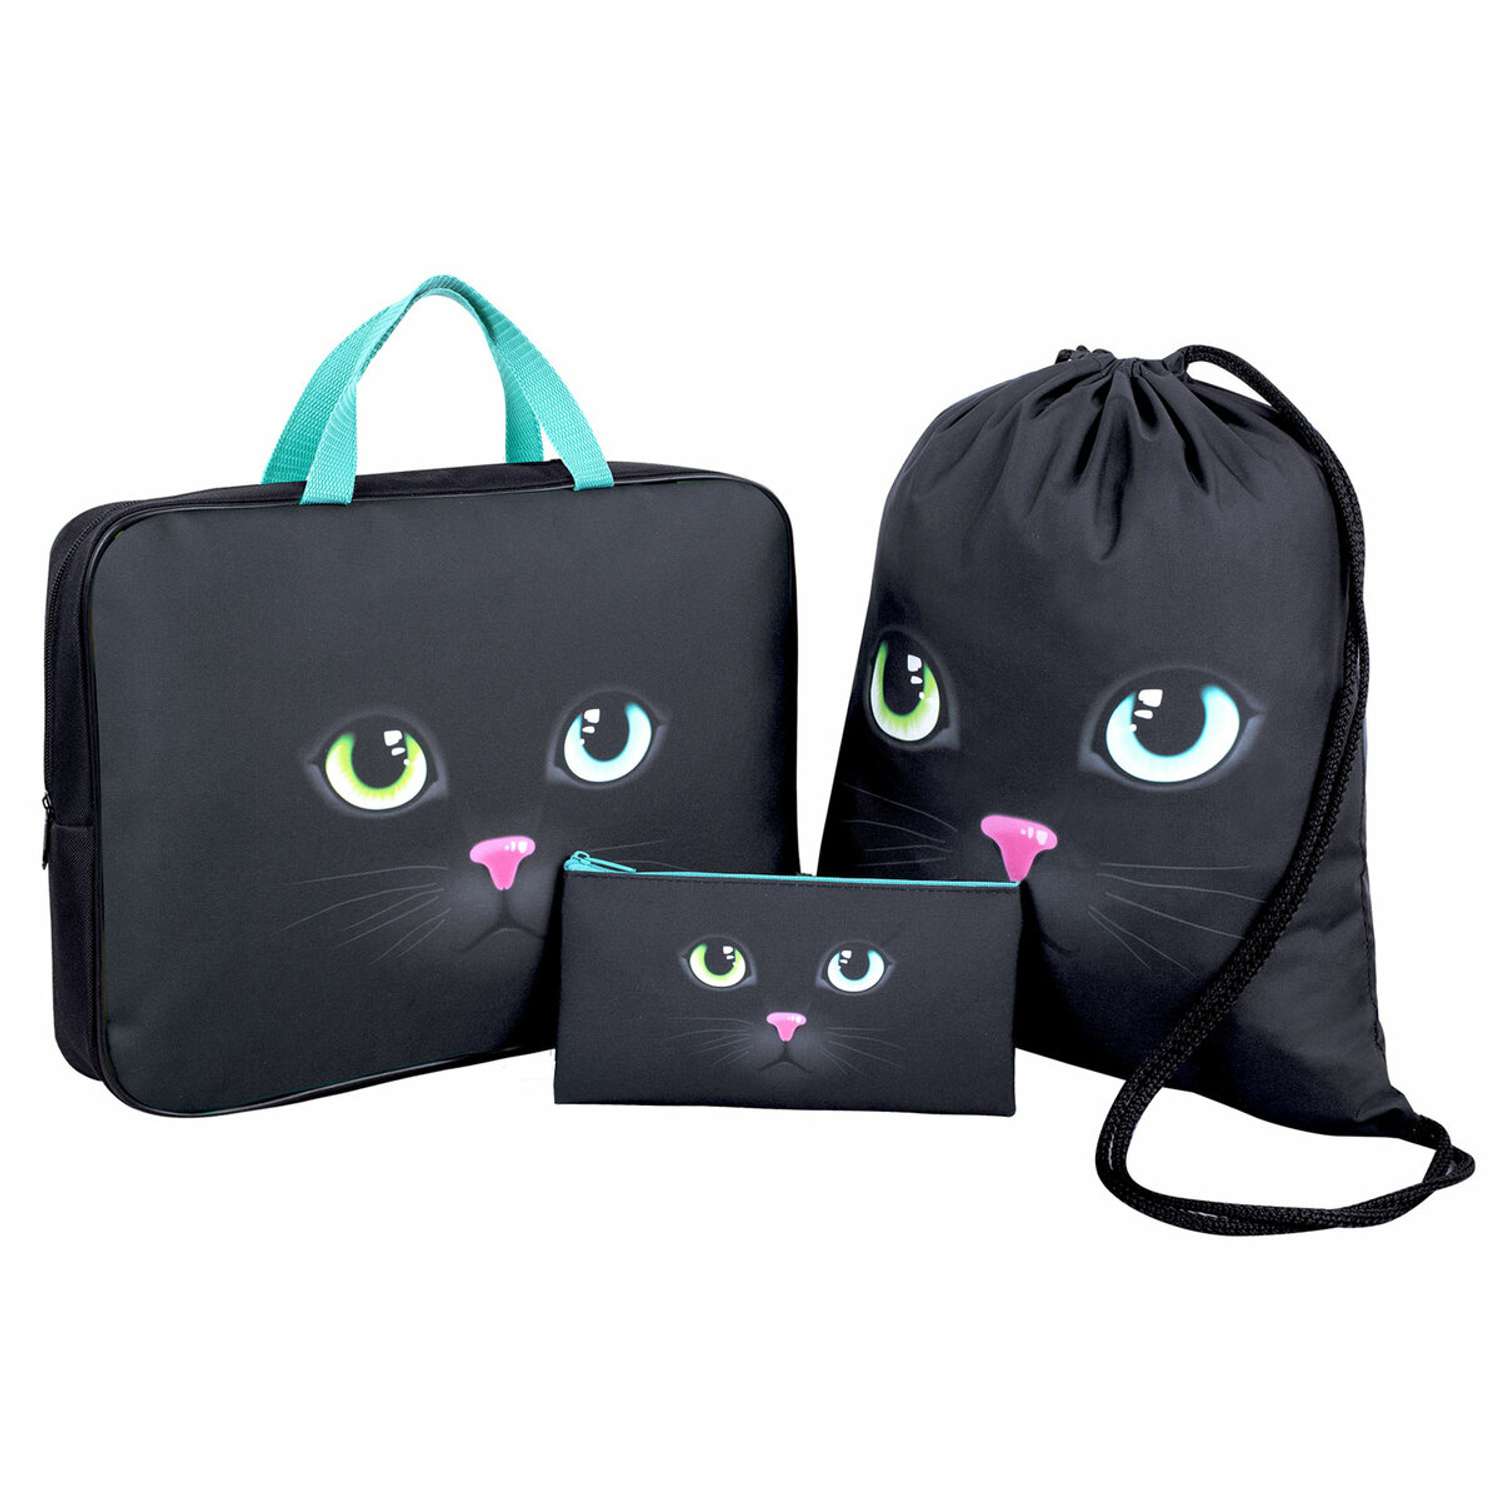 Набор школьника Brauberg для девочки и мальчика папка с ручками А4 мешок для обуви и пенал-косметичка Black cat - фото 1